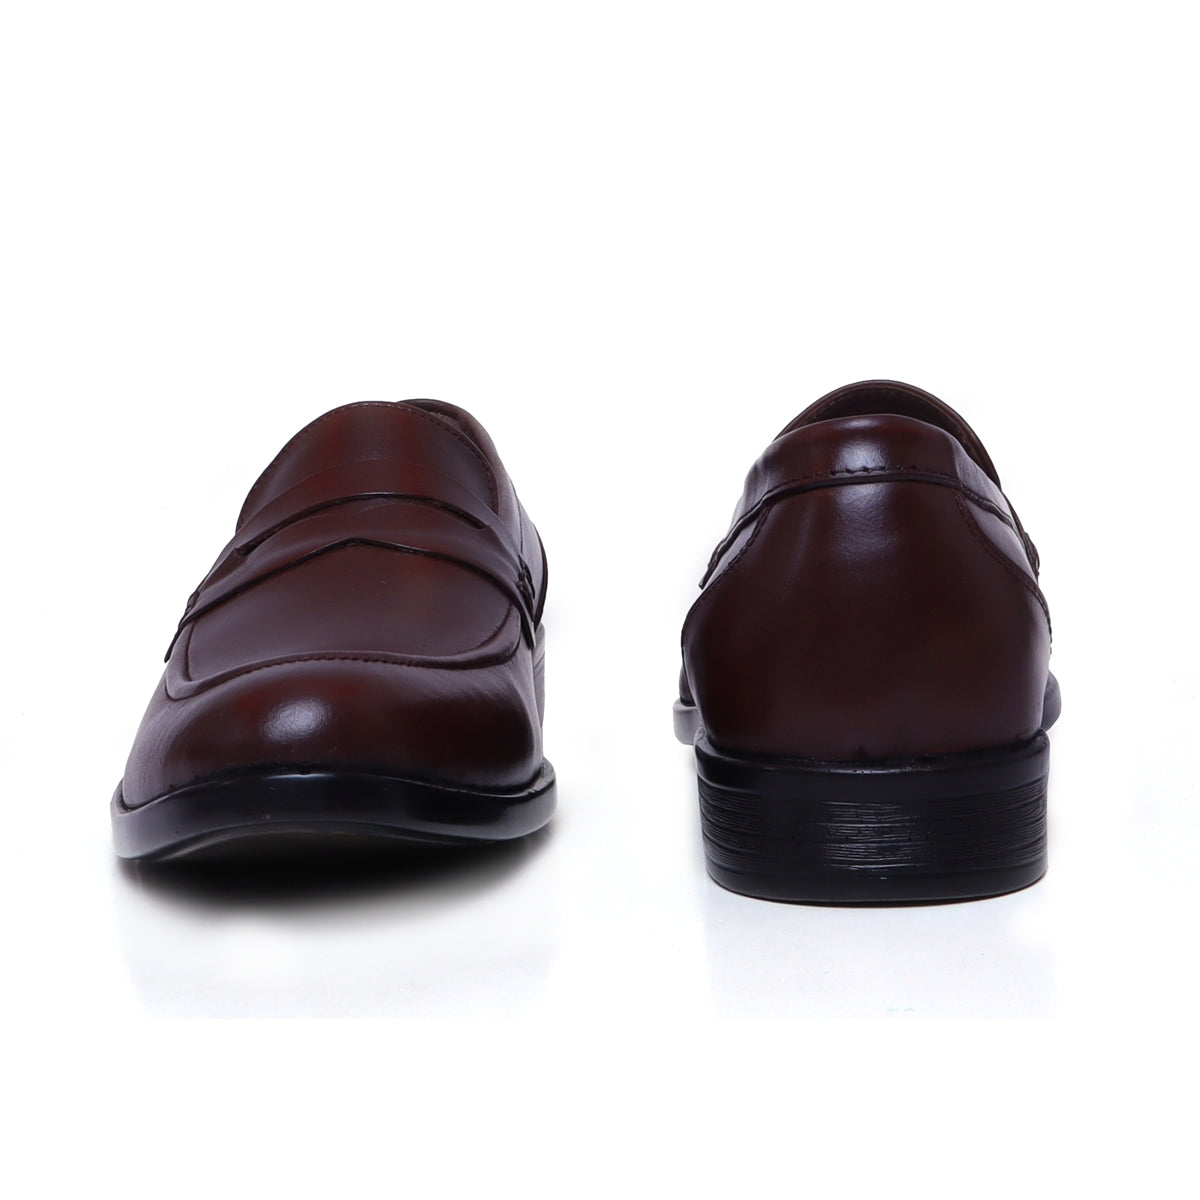 Loafers for Men PG – 21  Buy Leather Loafer Shoes for Men Online